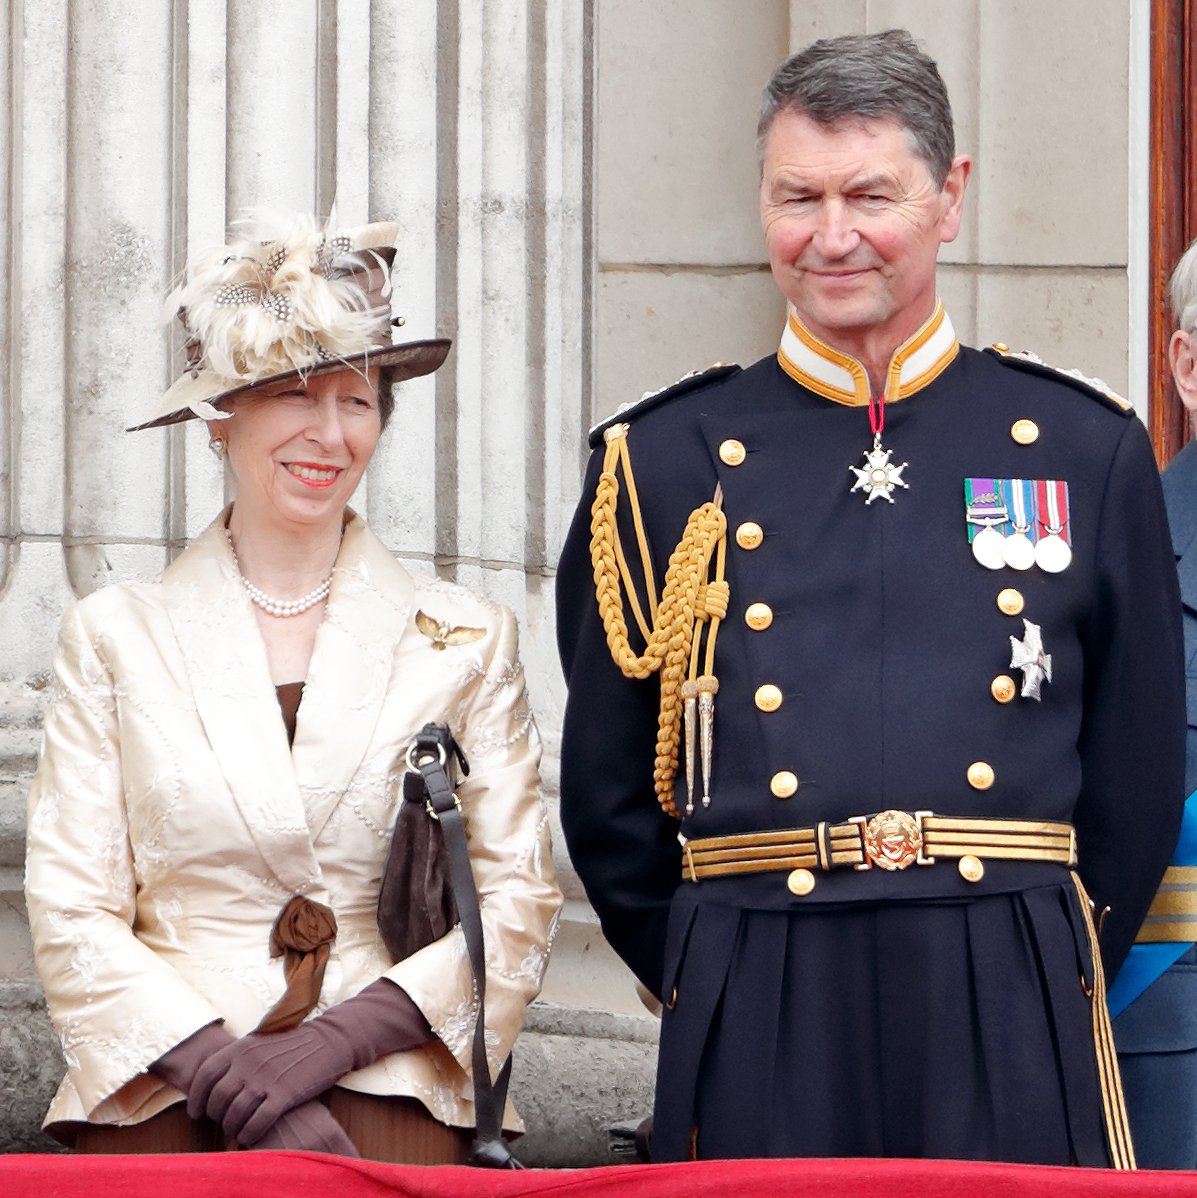 La princesa Anne y Sir Tim Laurence desde el balcón del palacio de Buckingham, el 10 de julio de 2018 en Londres, Inglaterra. | Foto: Getty Images